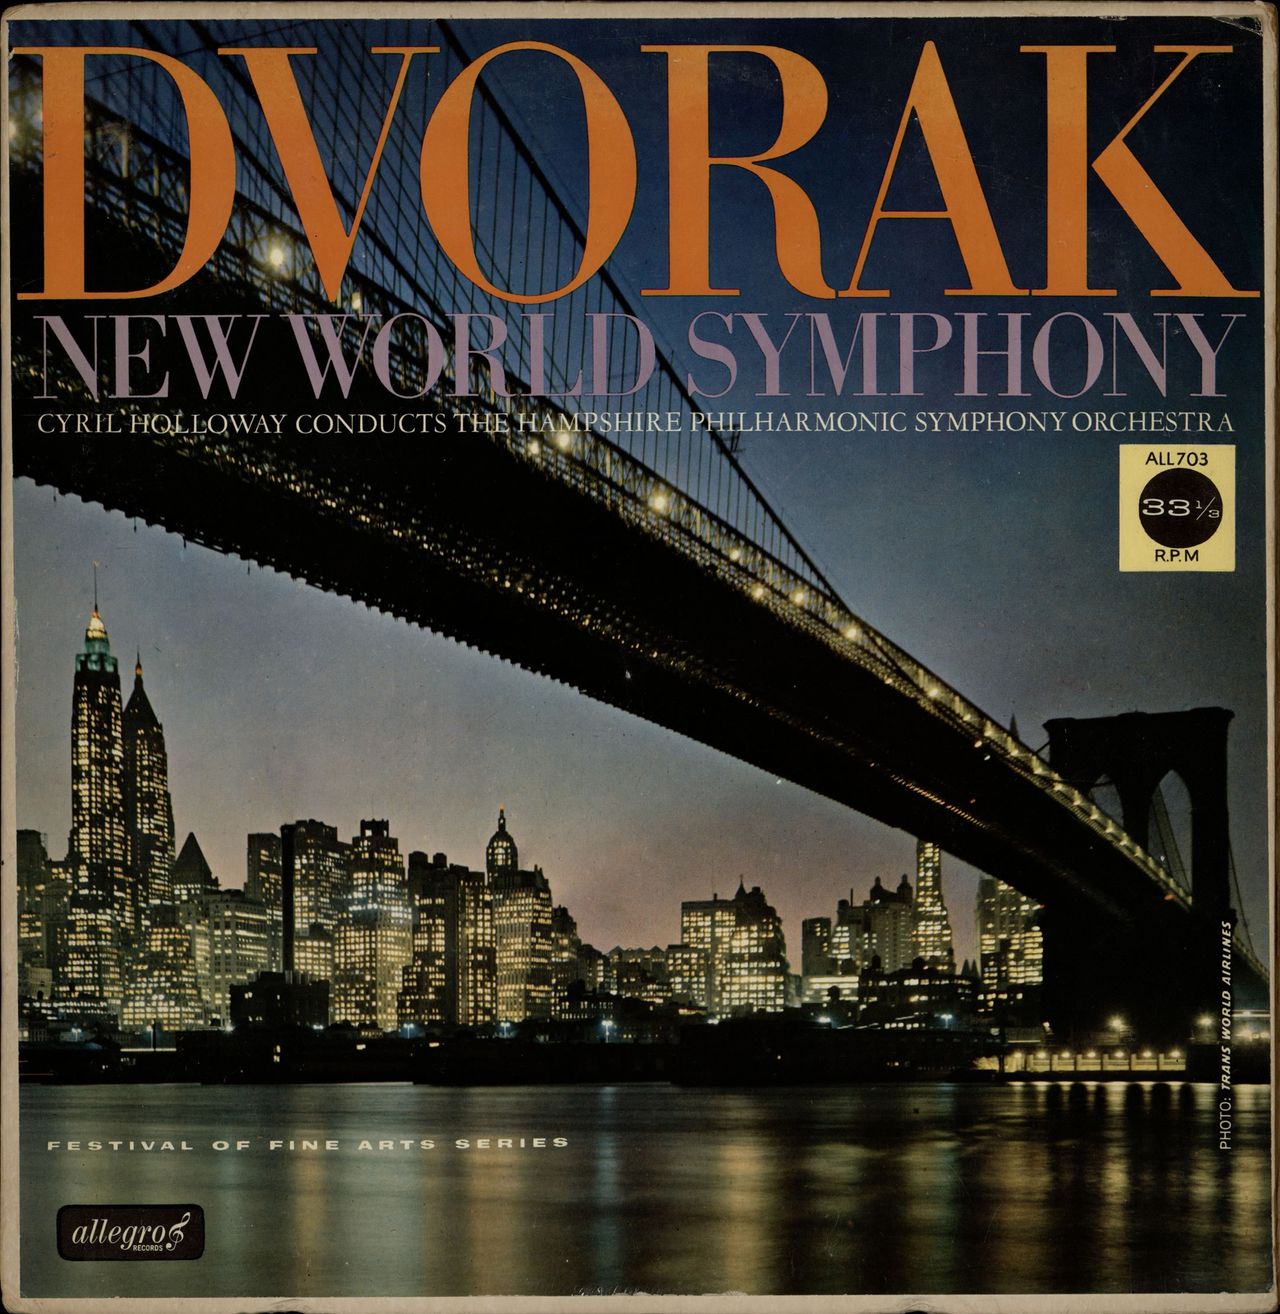 Antonín Dvorák New World Symphony UK vinyl LP album (LP record) ALL703